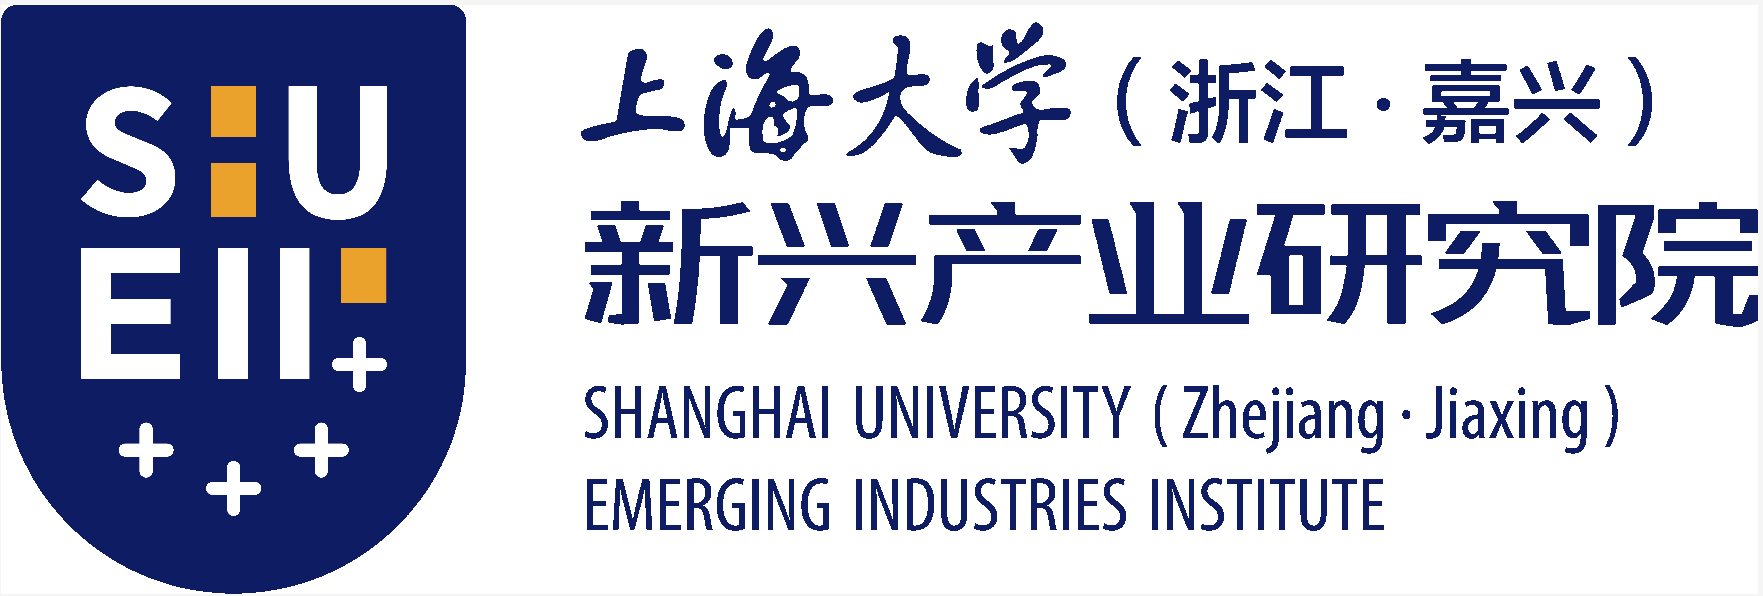 上海大学（浙江•嘉兴）新业产业研究院